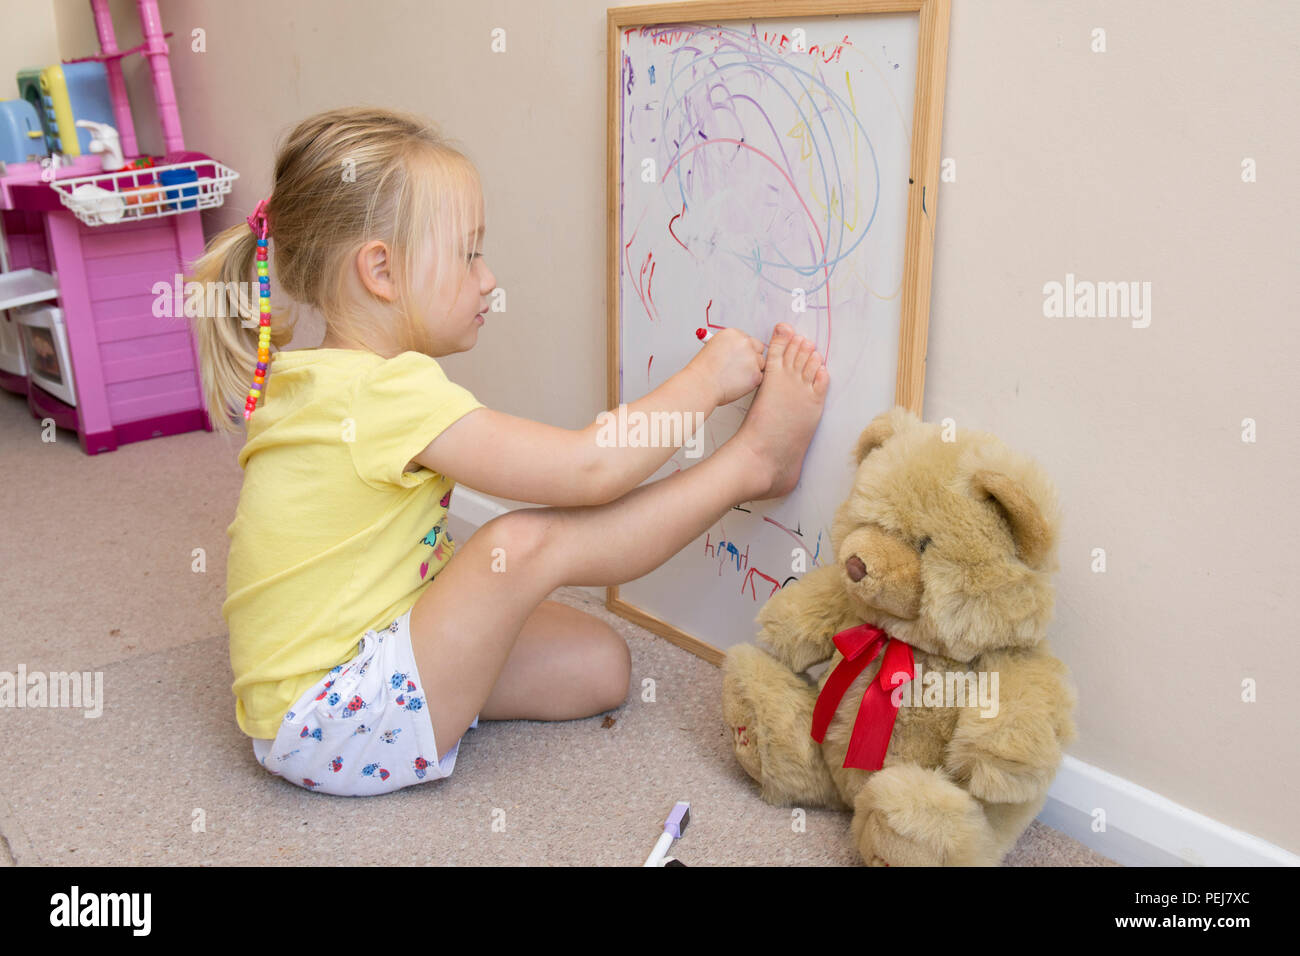 Junge zwei Jahre altes Mädchen Zeichnung mit Farbstift auf dem Whiteboard, künstlerische, Zeichnung um den Umriss des Fußes. Stockfoto